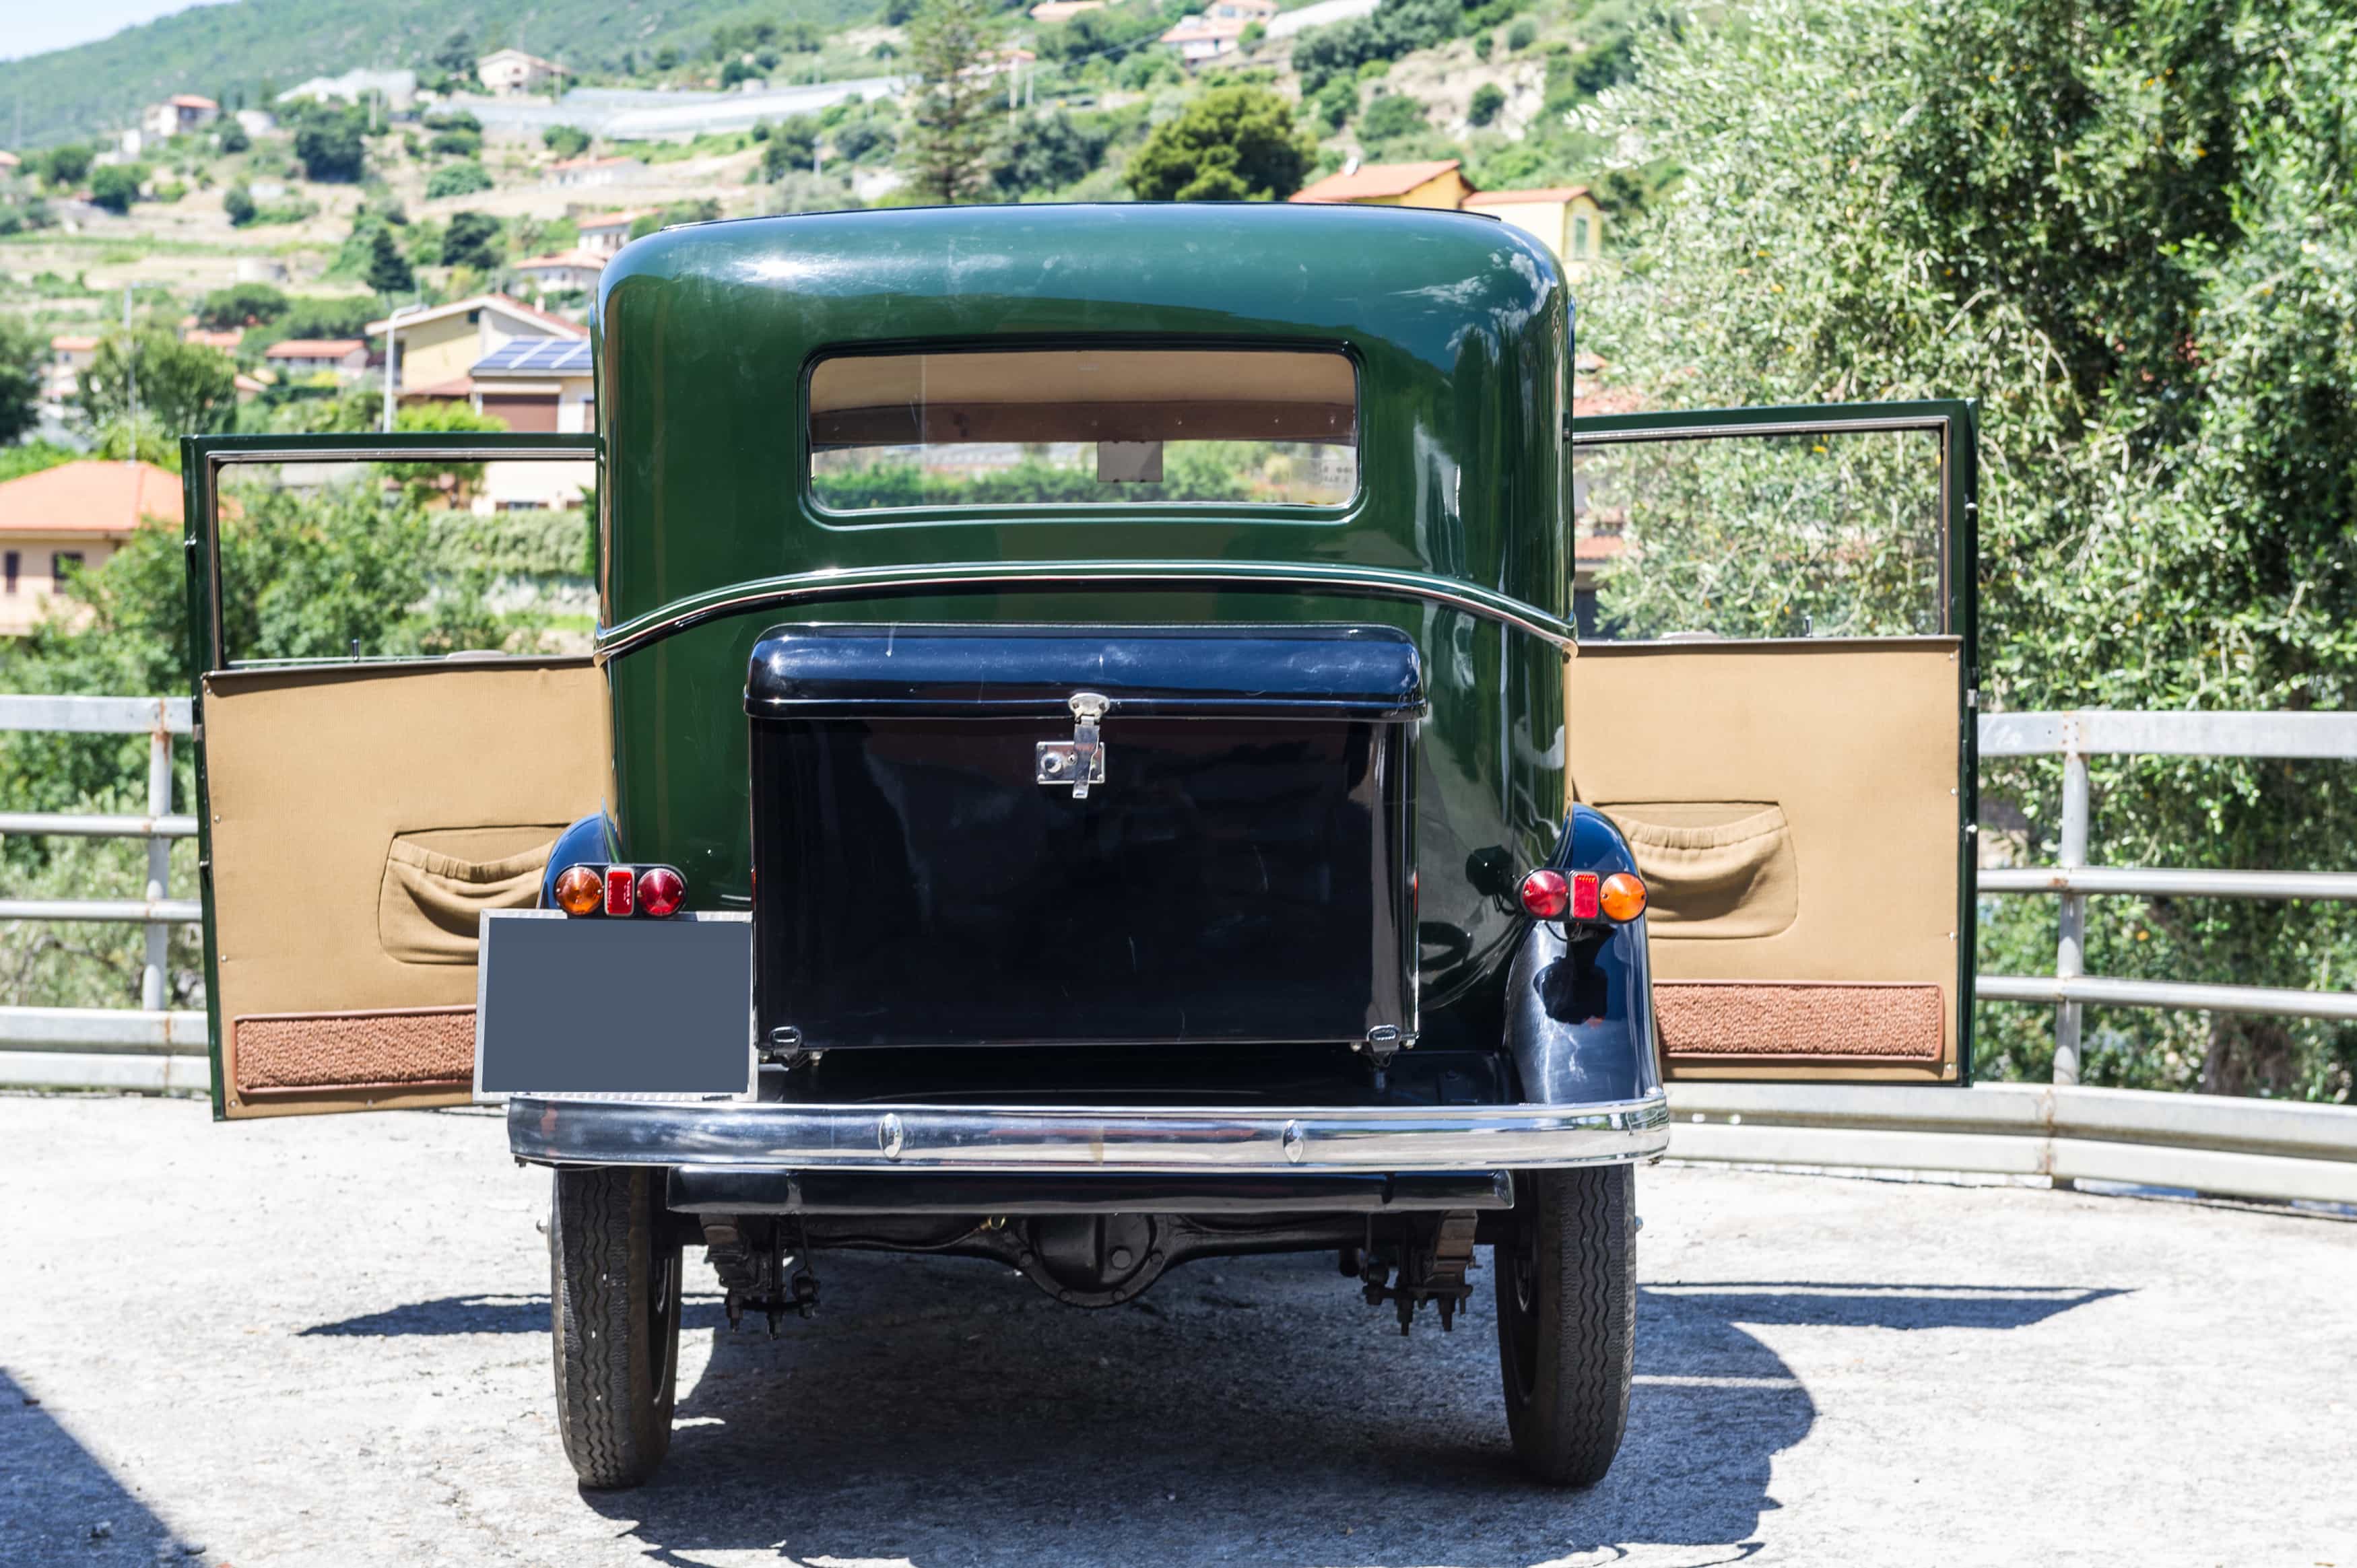 1939 – FIAT BALILLA TRE MARCE - Image 2 of 3